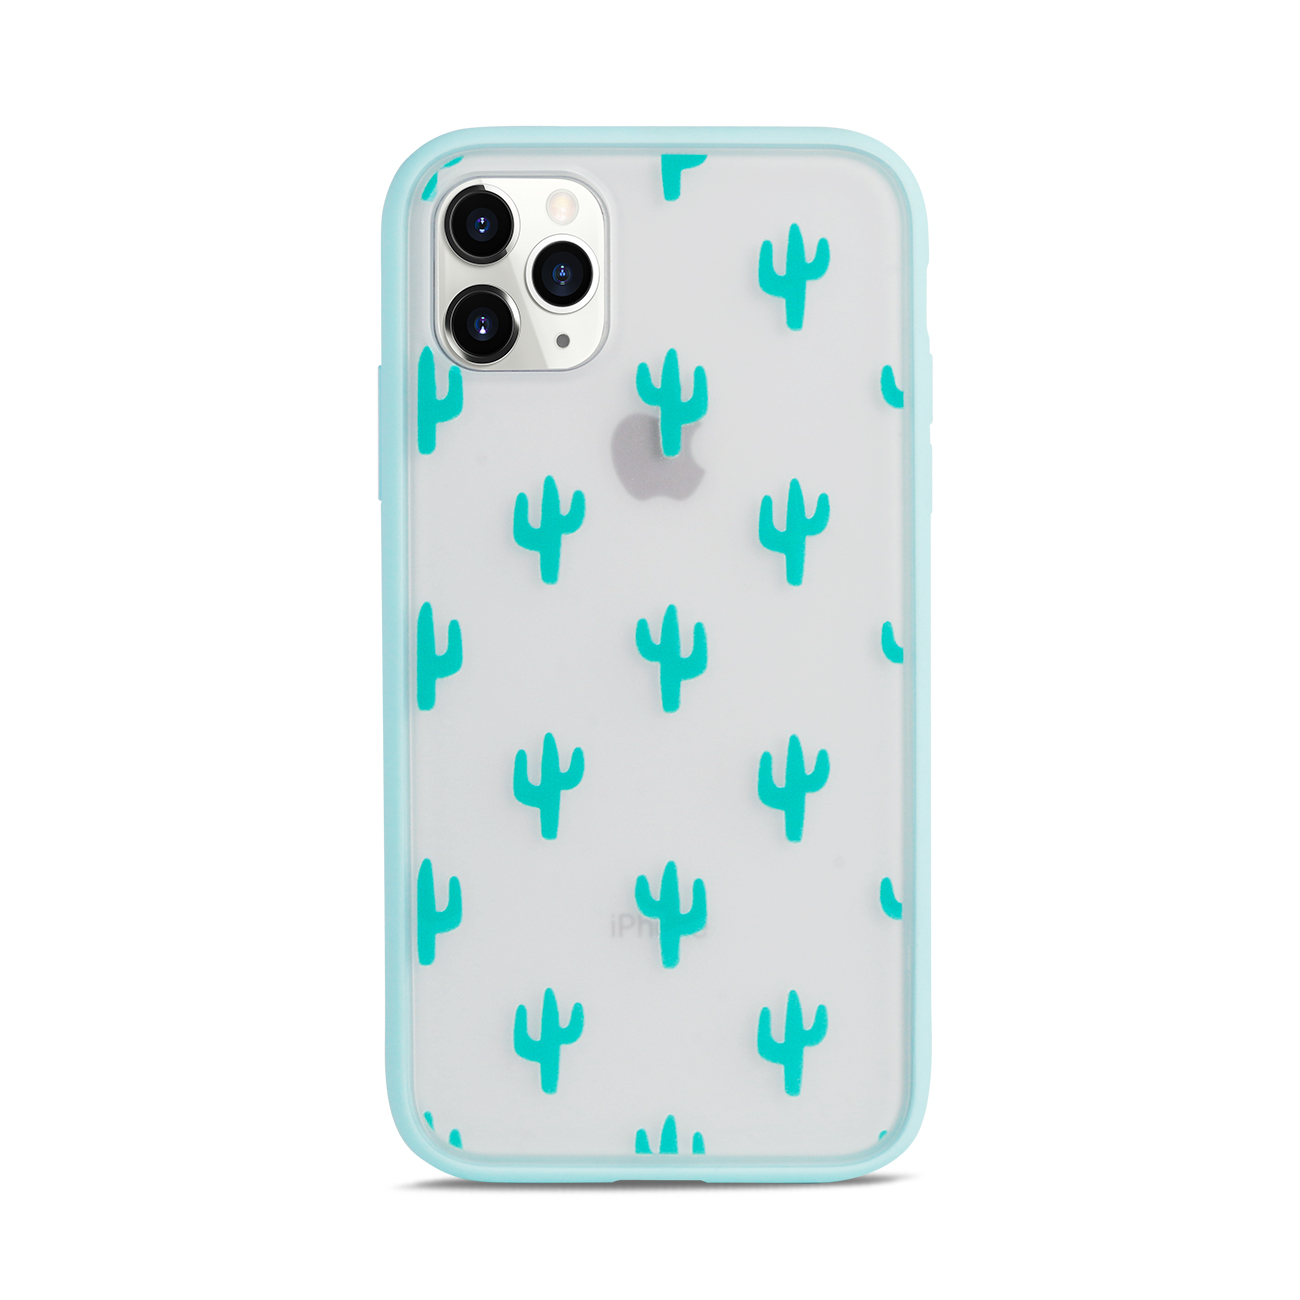 Slim Matte Design Hybrid Case for iPHONE 11 6.1 (Cactus)